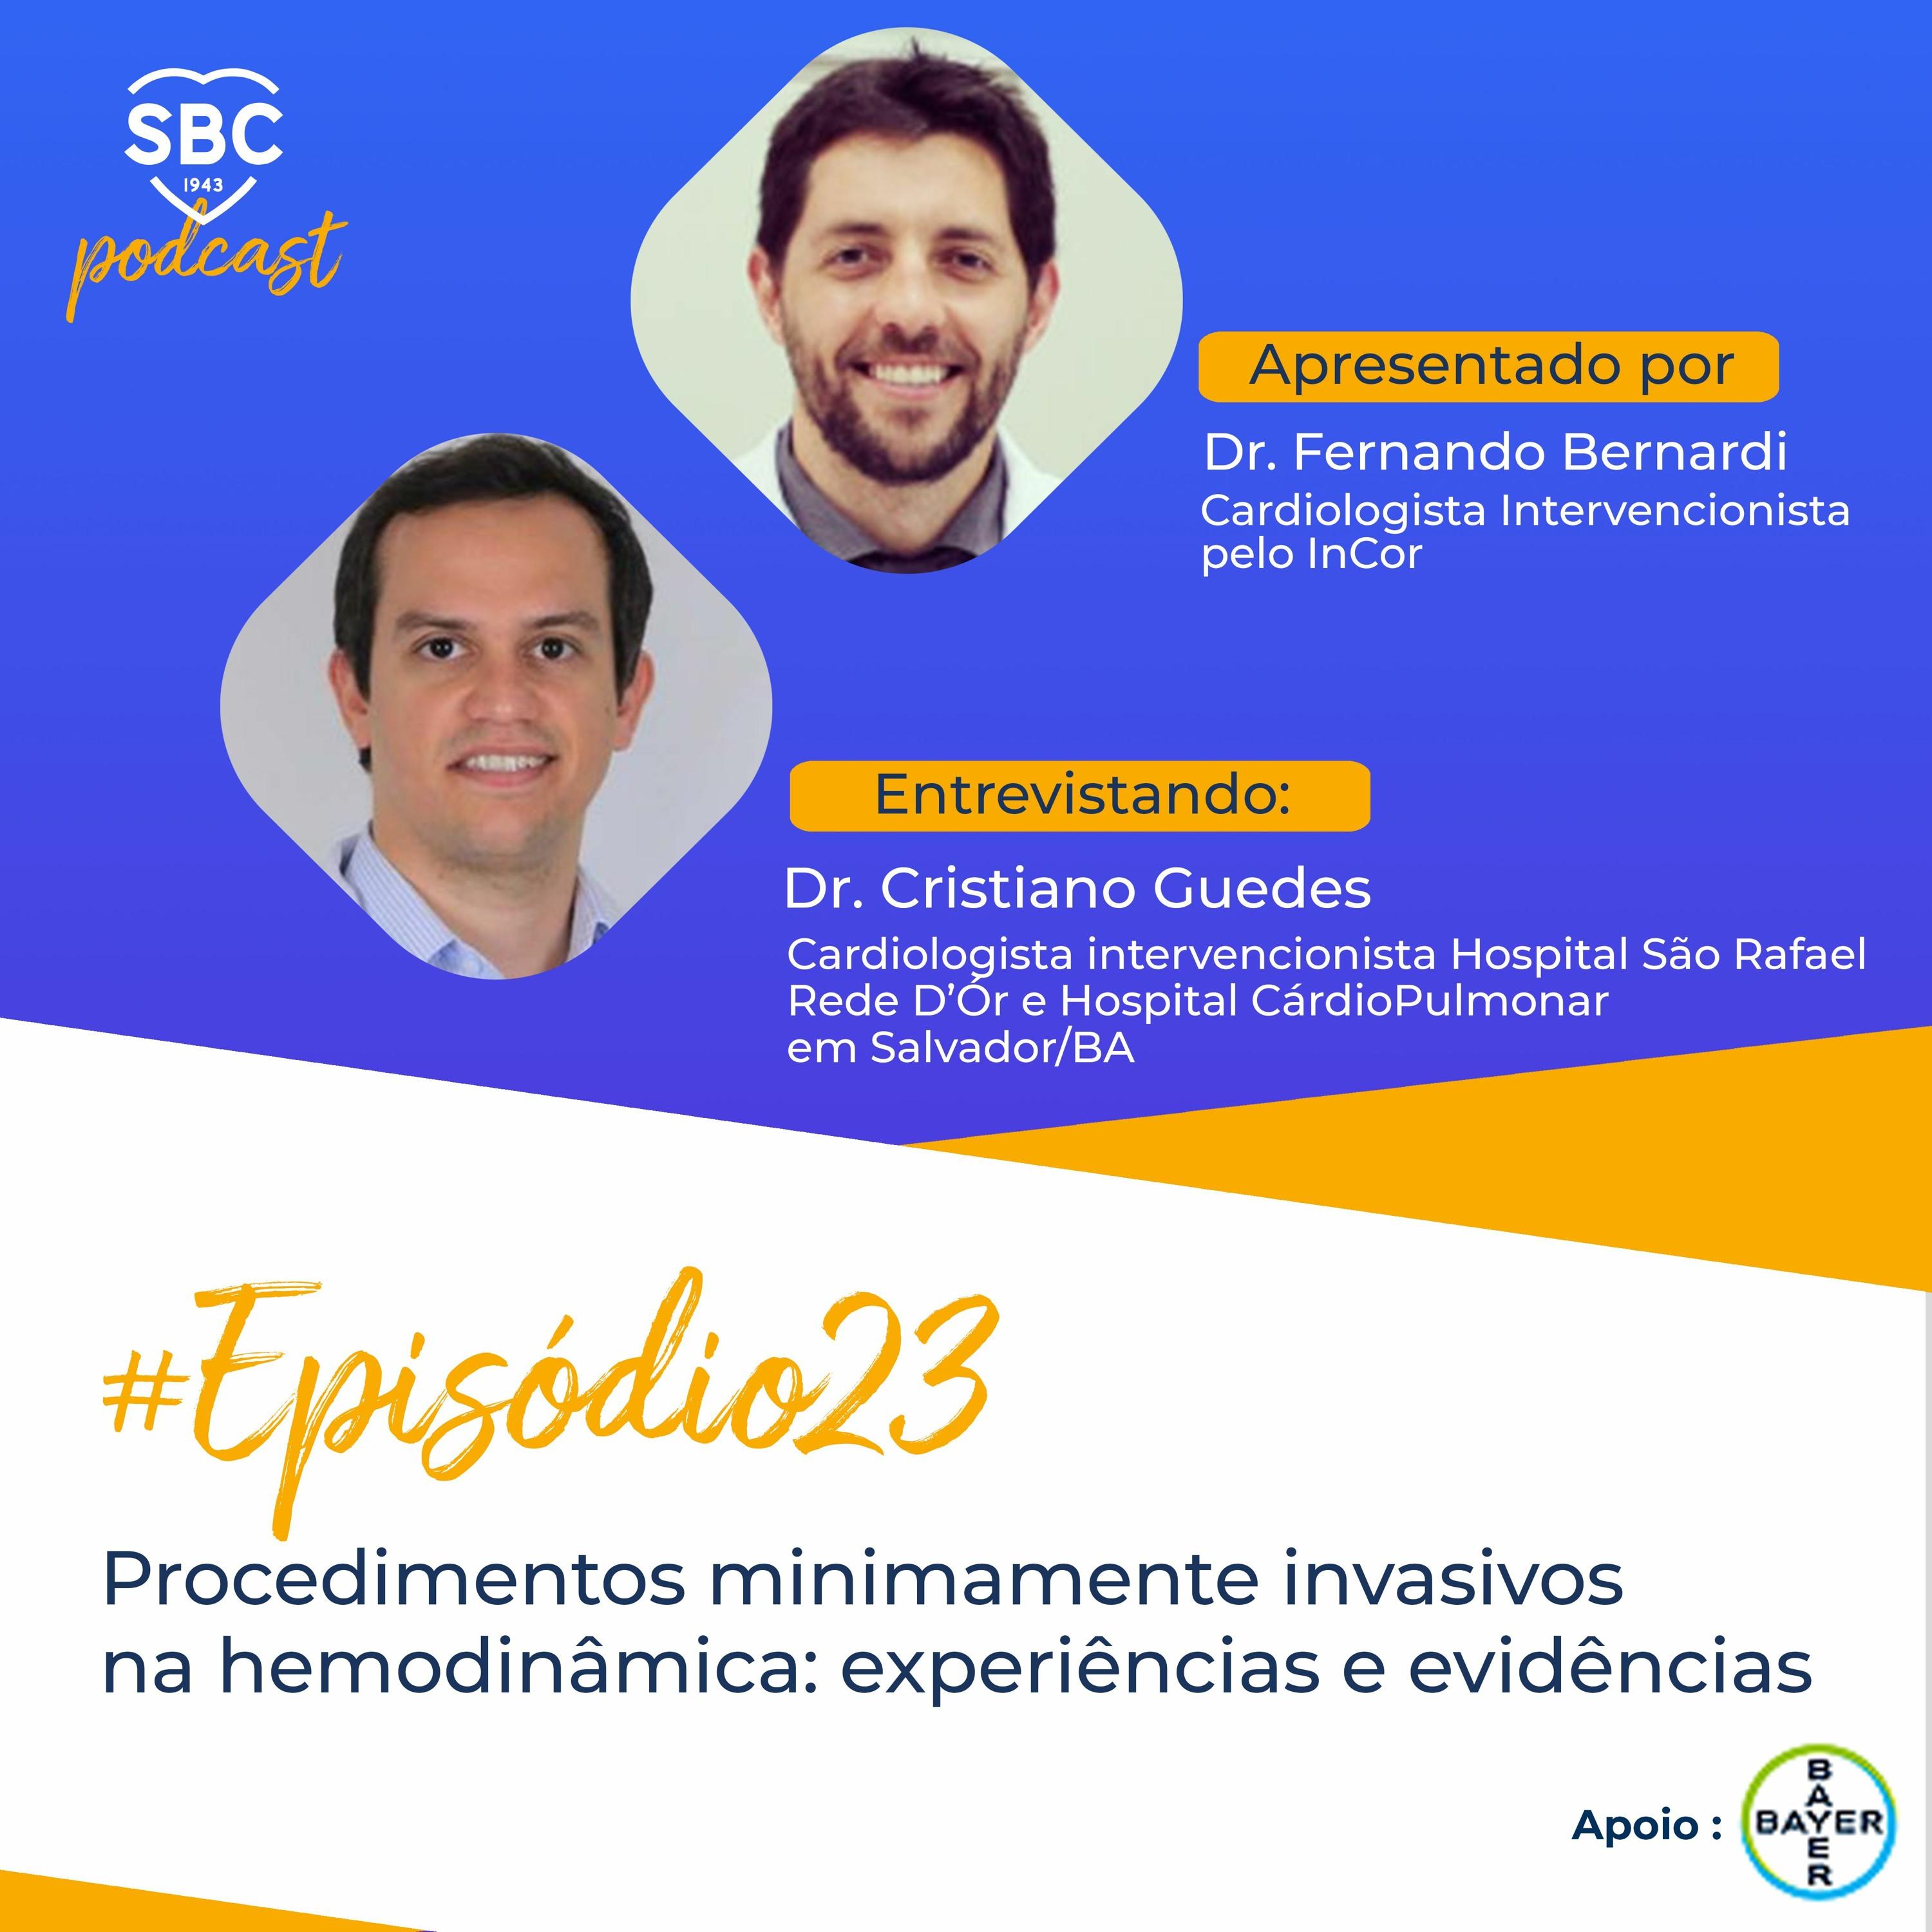 Neste episódio, o Dr. Fernando Bernardi entrevista o Dr. Cristiano Guedes sobre a realização de procedimentos intervencionistas minimamente invasivos na hemodinâmica.